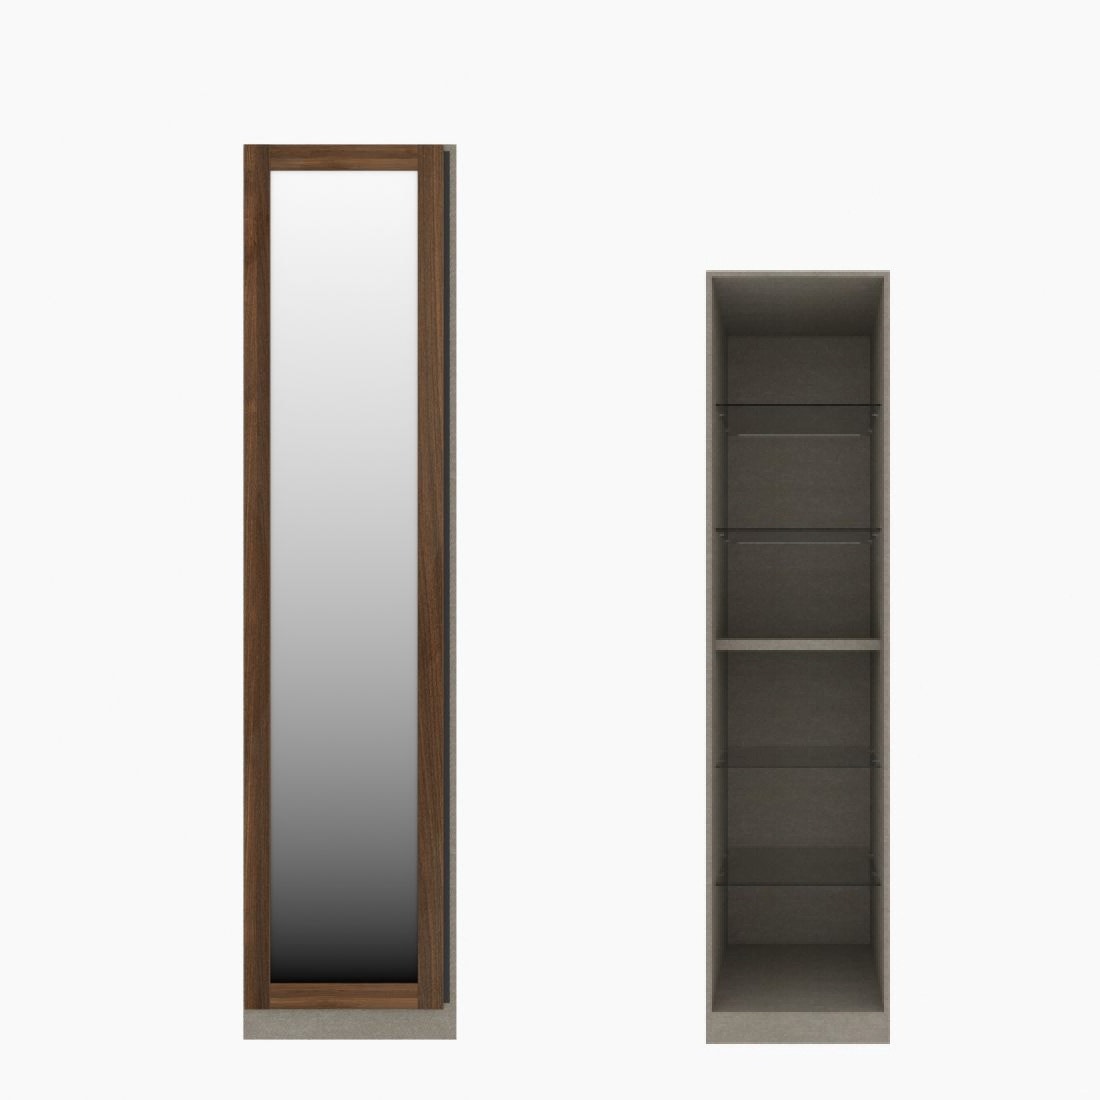 ตู้เสื้อผ้า ตู้โชว์ชั้นกระจก OP-H (หน้าบานเปิดซ้าย) ขนาด 50 ซม. รุ่น Blox สีไม้เข้ม&กระจกเงา01